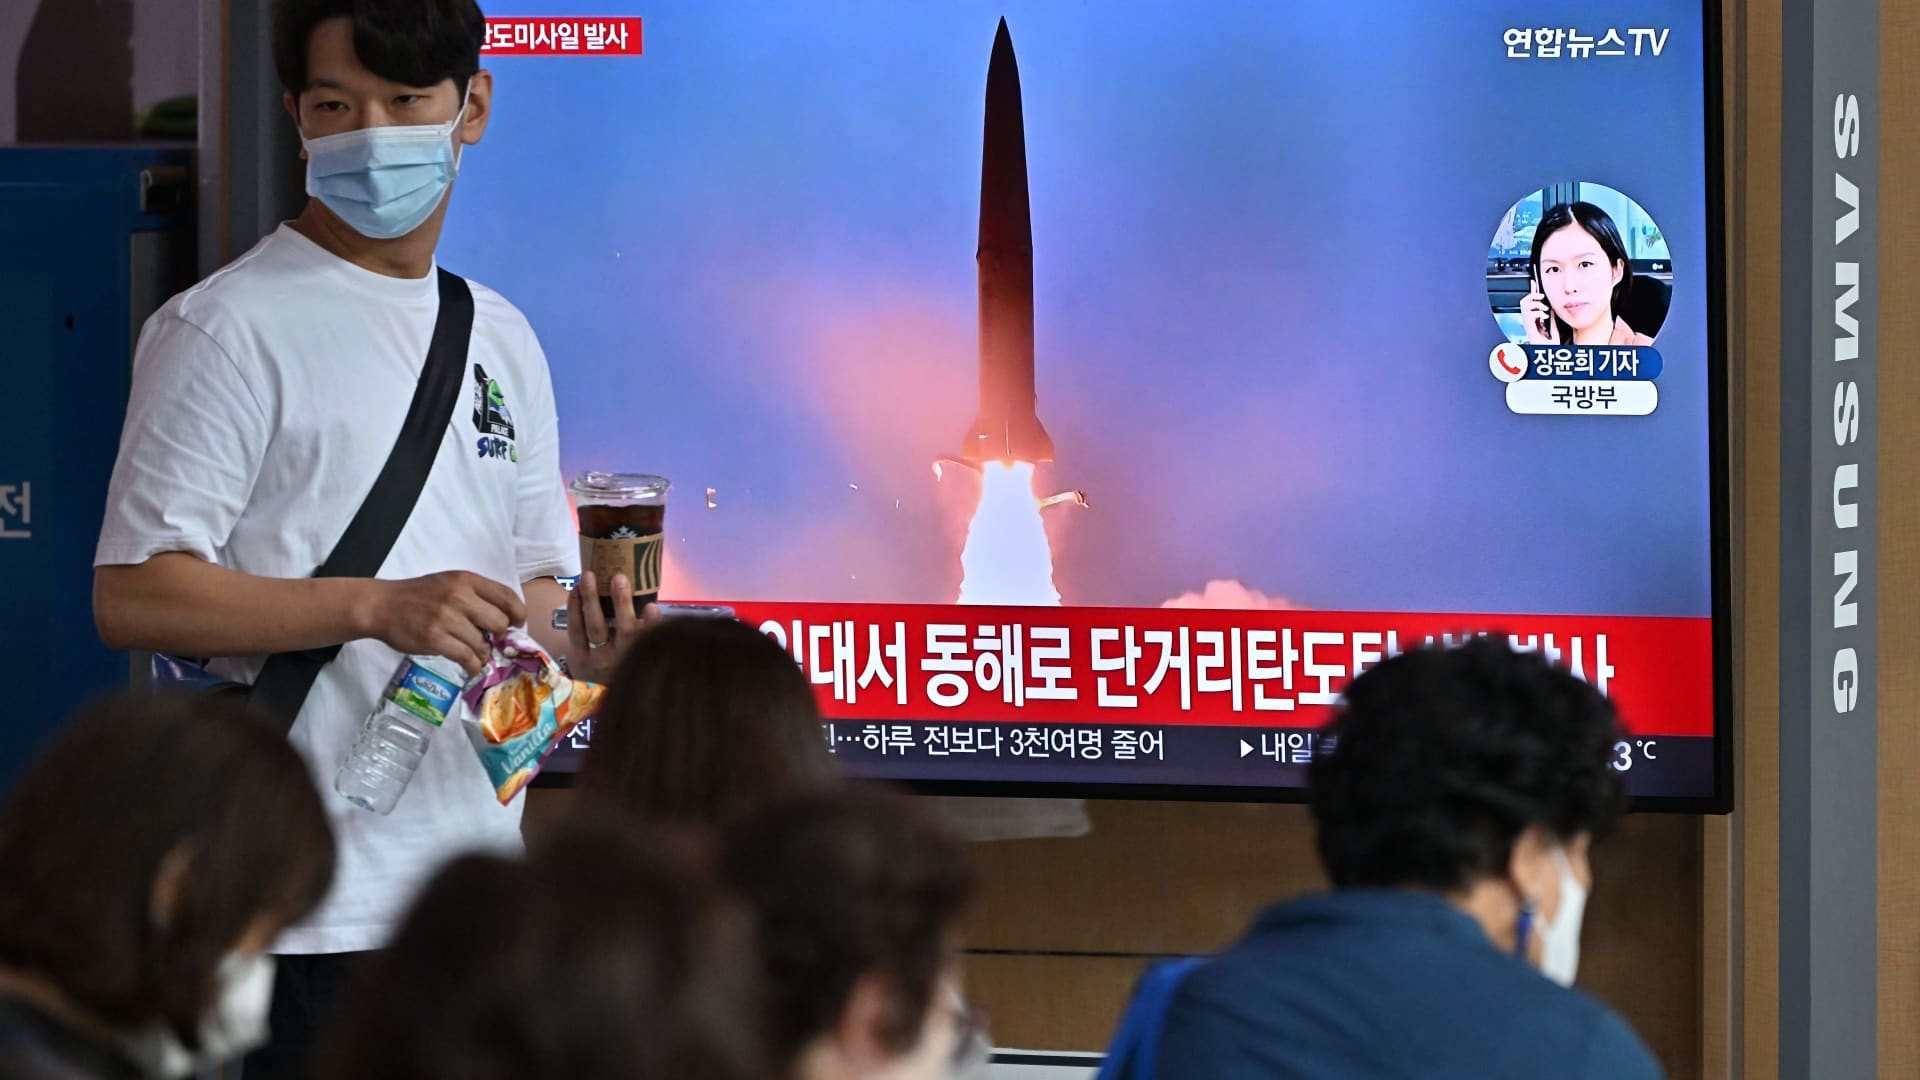 North Korea fires ballistic missile ahead of visit to Kamala Harris